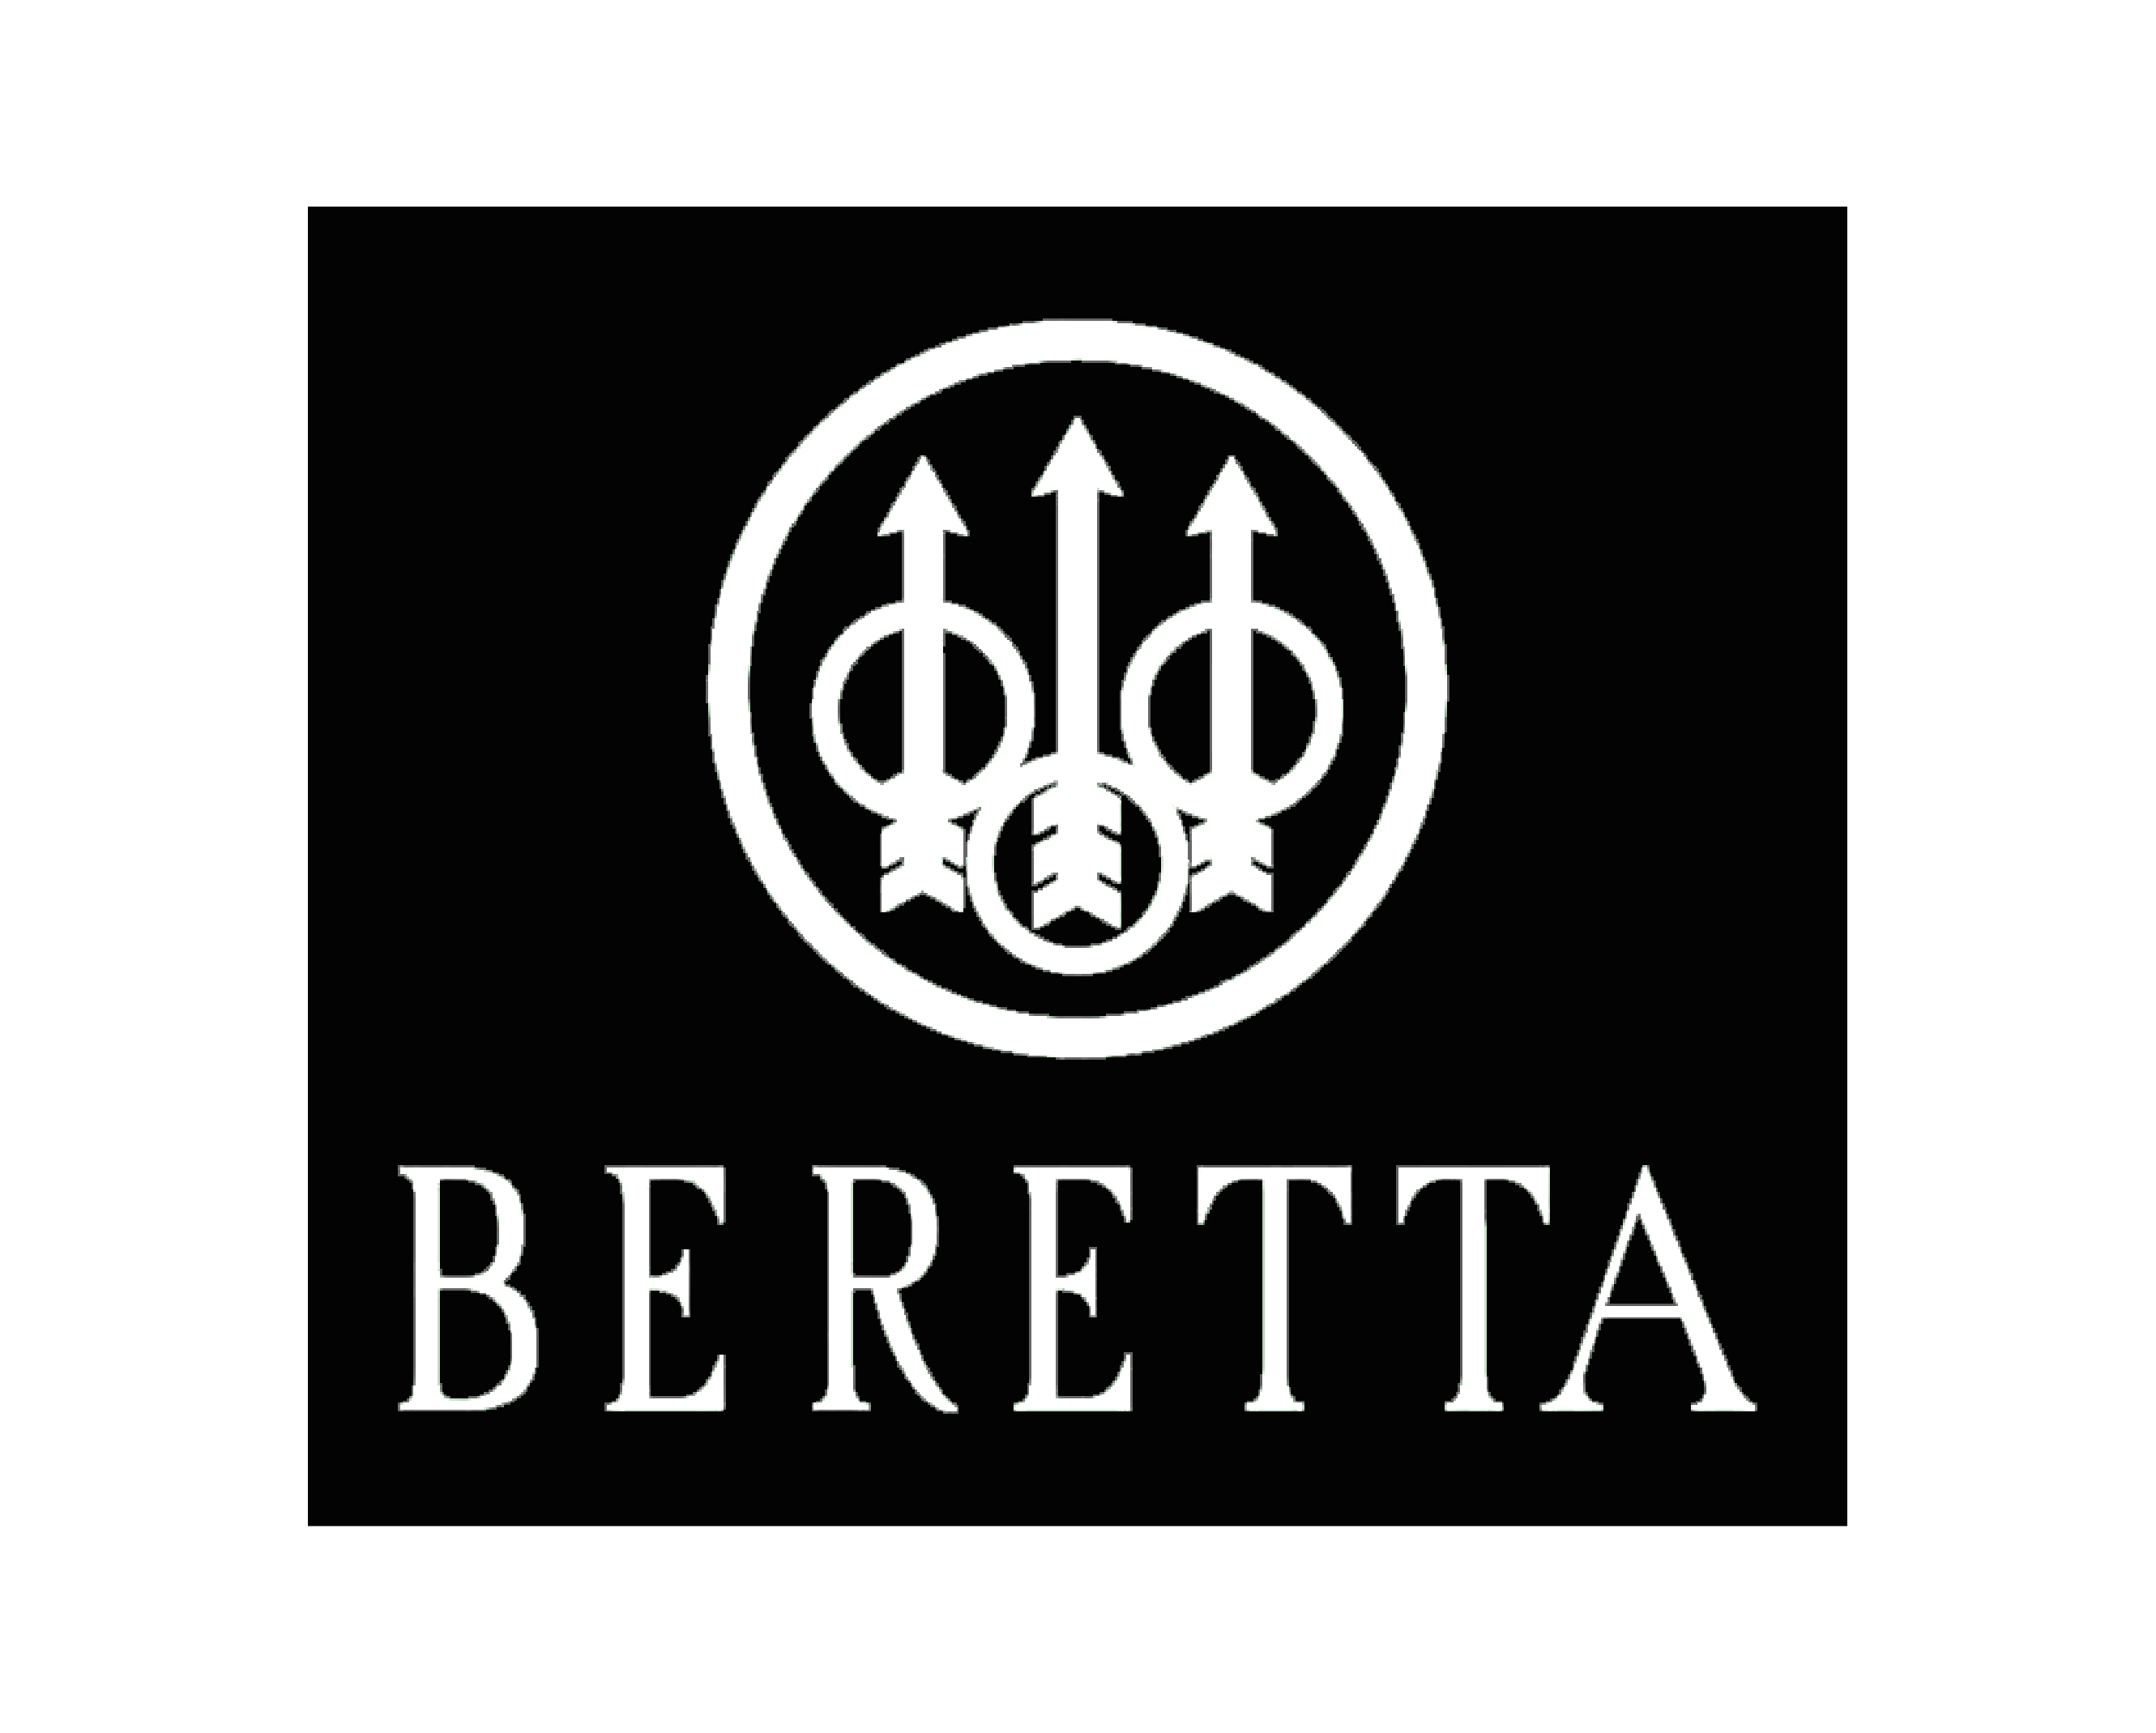 //centre-tir.ch/wp-content/uploads/2017/10/logo-beretta.png